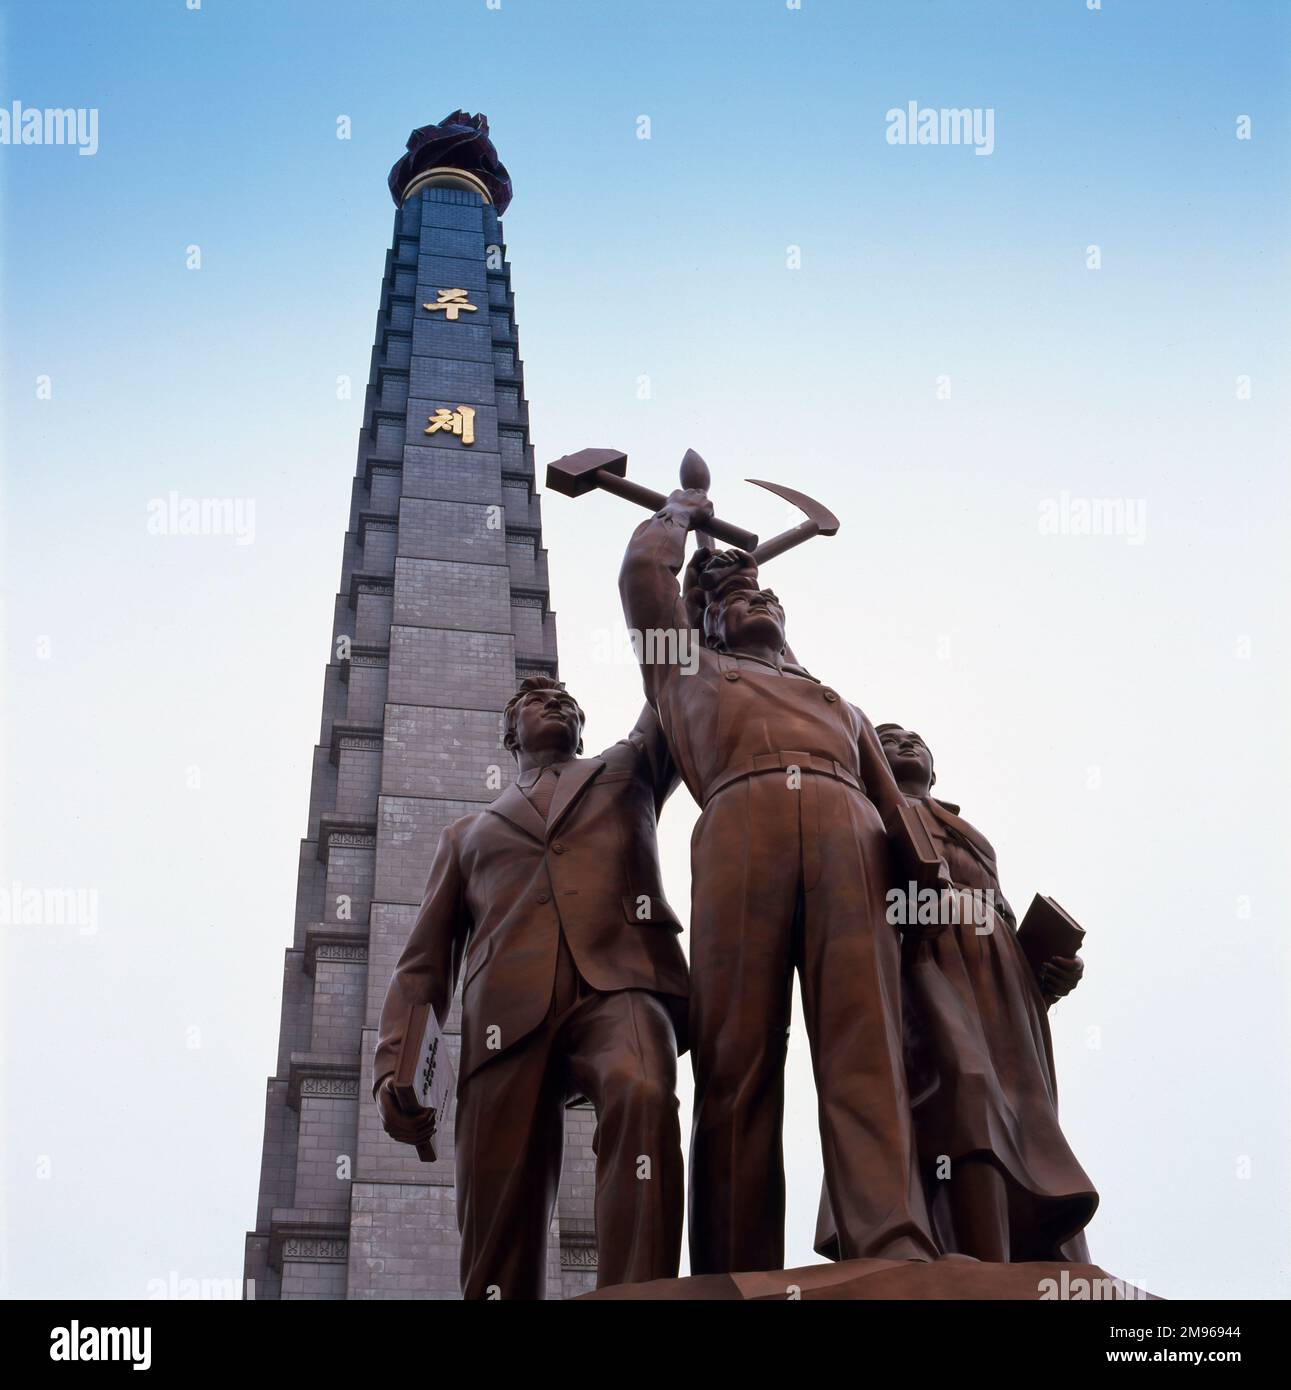 Une statue représentant trois membres du prolétariat, l'un avec un marteau, l'autre avec une faucille et l'autre avec une brosse à écriture (un travailleur idéalisé, un paysan et un 'intellectuel de travail'), au pied de la Tour de l'idée de Juche, Sur la rive est du fleuve Taedong à Pyongyang, capitale de la Corée du Nord. La tour est nommée d'après le principe de la Juche, développé par Kim il Sung (1912-1994) comme un mélange d'autarcie, d'autosuffisance, d'isolationnisme, de traditionalisme coréen et de marxisme-léninisme. Il a été achevé en 1982, pour commémorer l'anniversaire de Kim il Sung en 70th, et il mesure 170 mètres de haut. L'Associa Banque D'Images